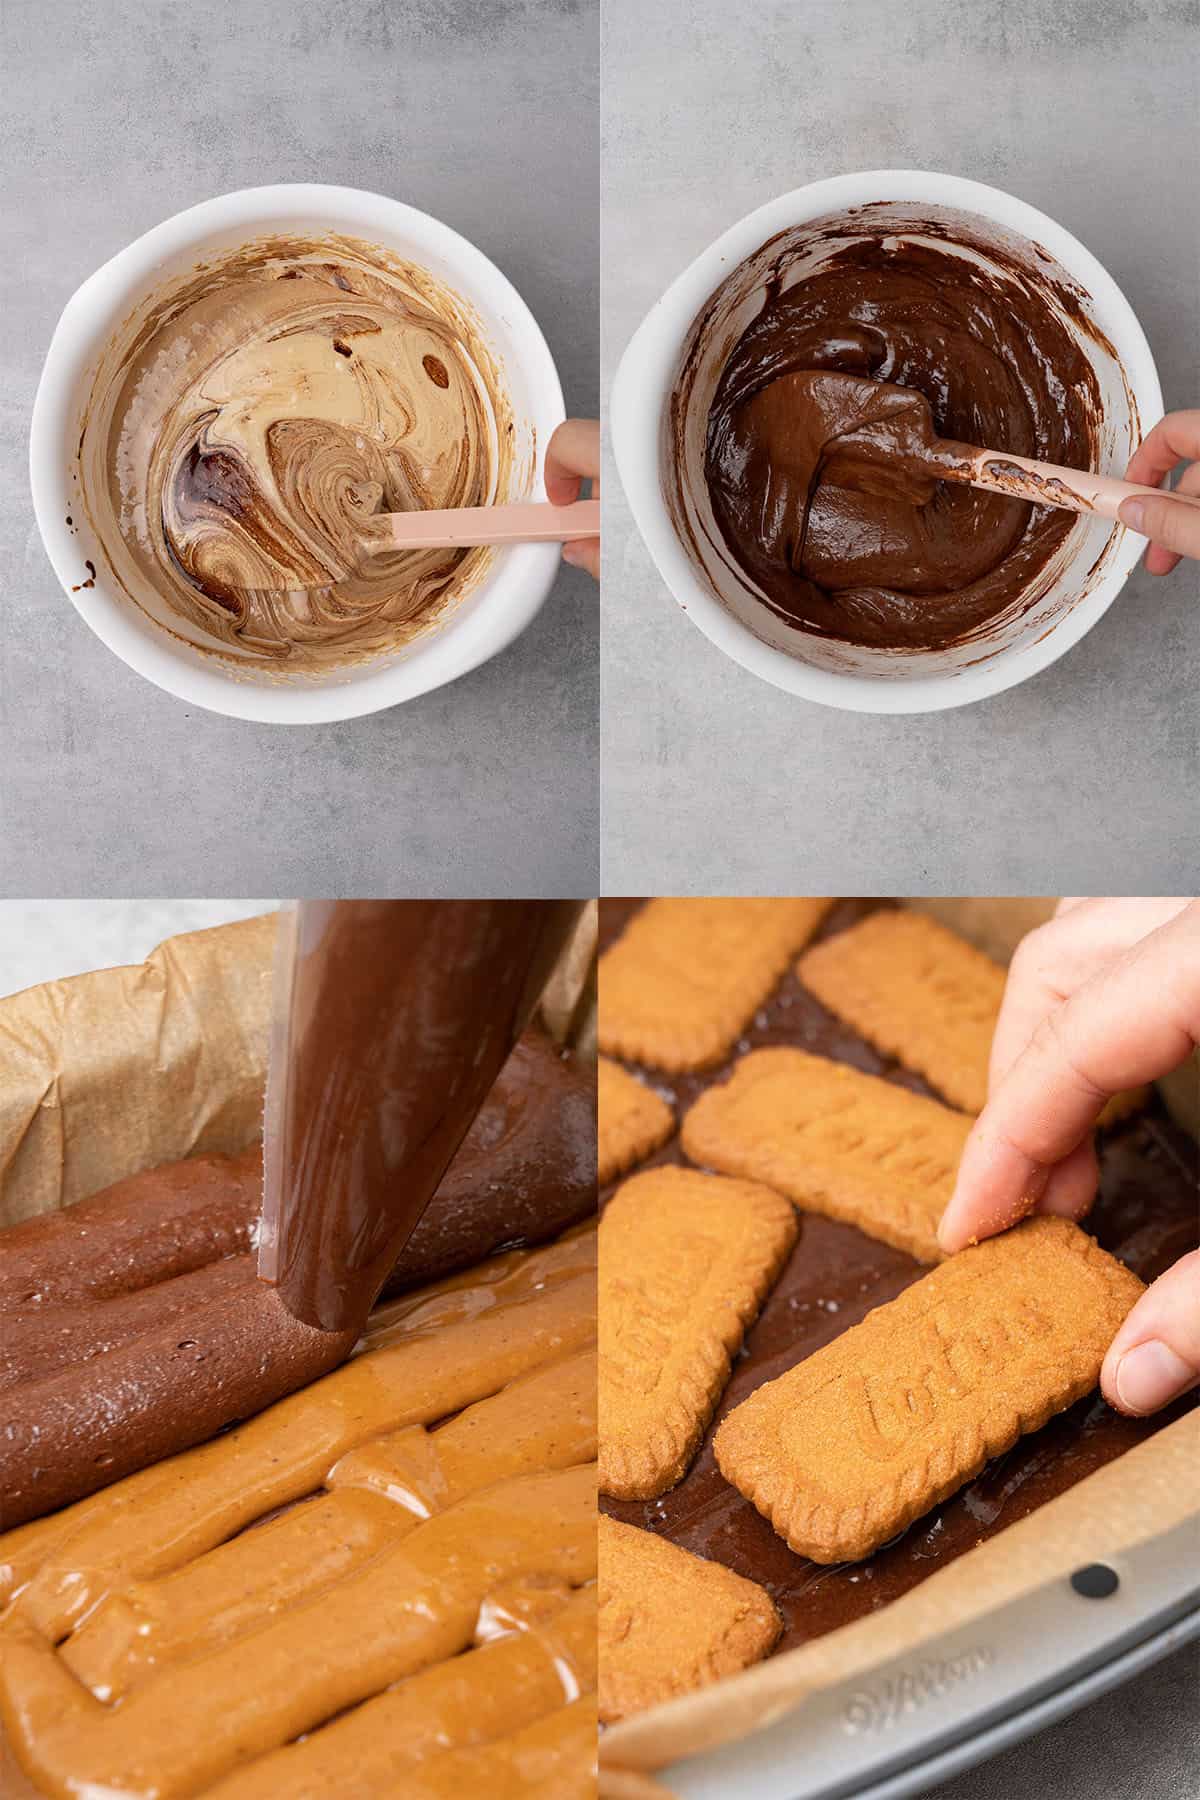 Biscoff brownies step-by-step process.